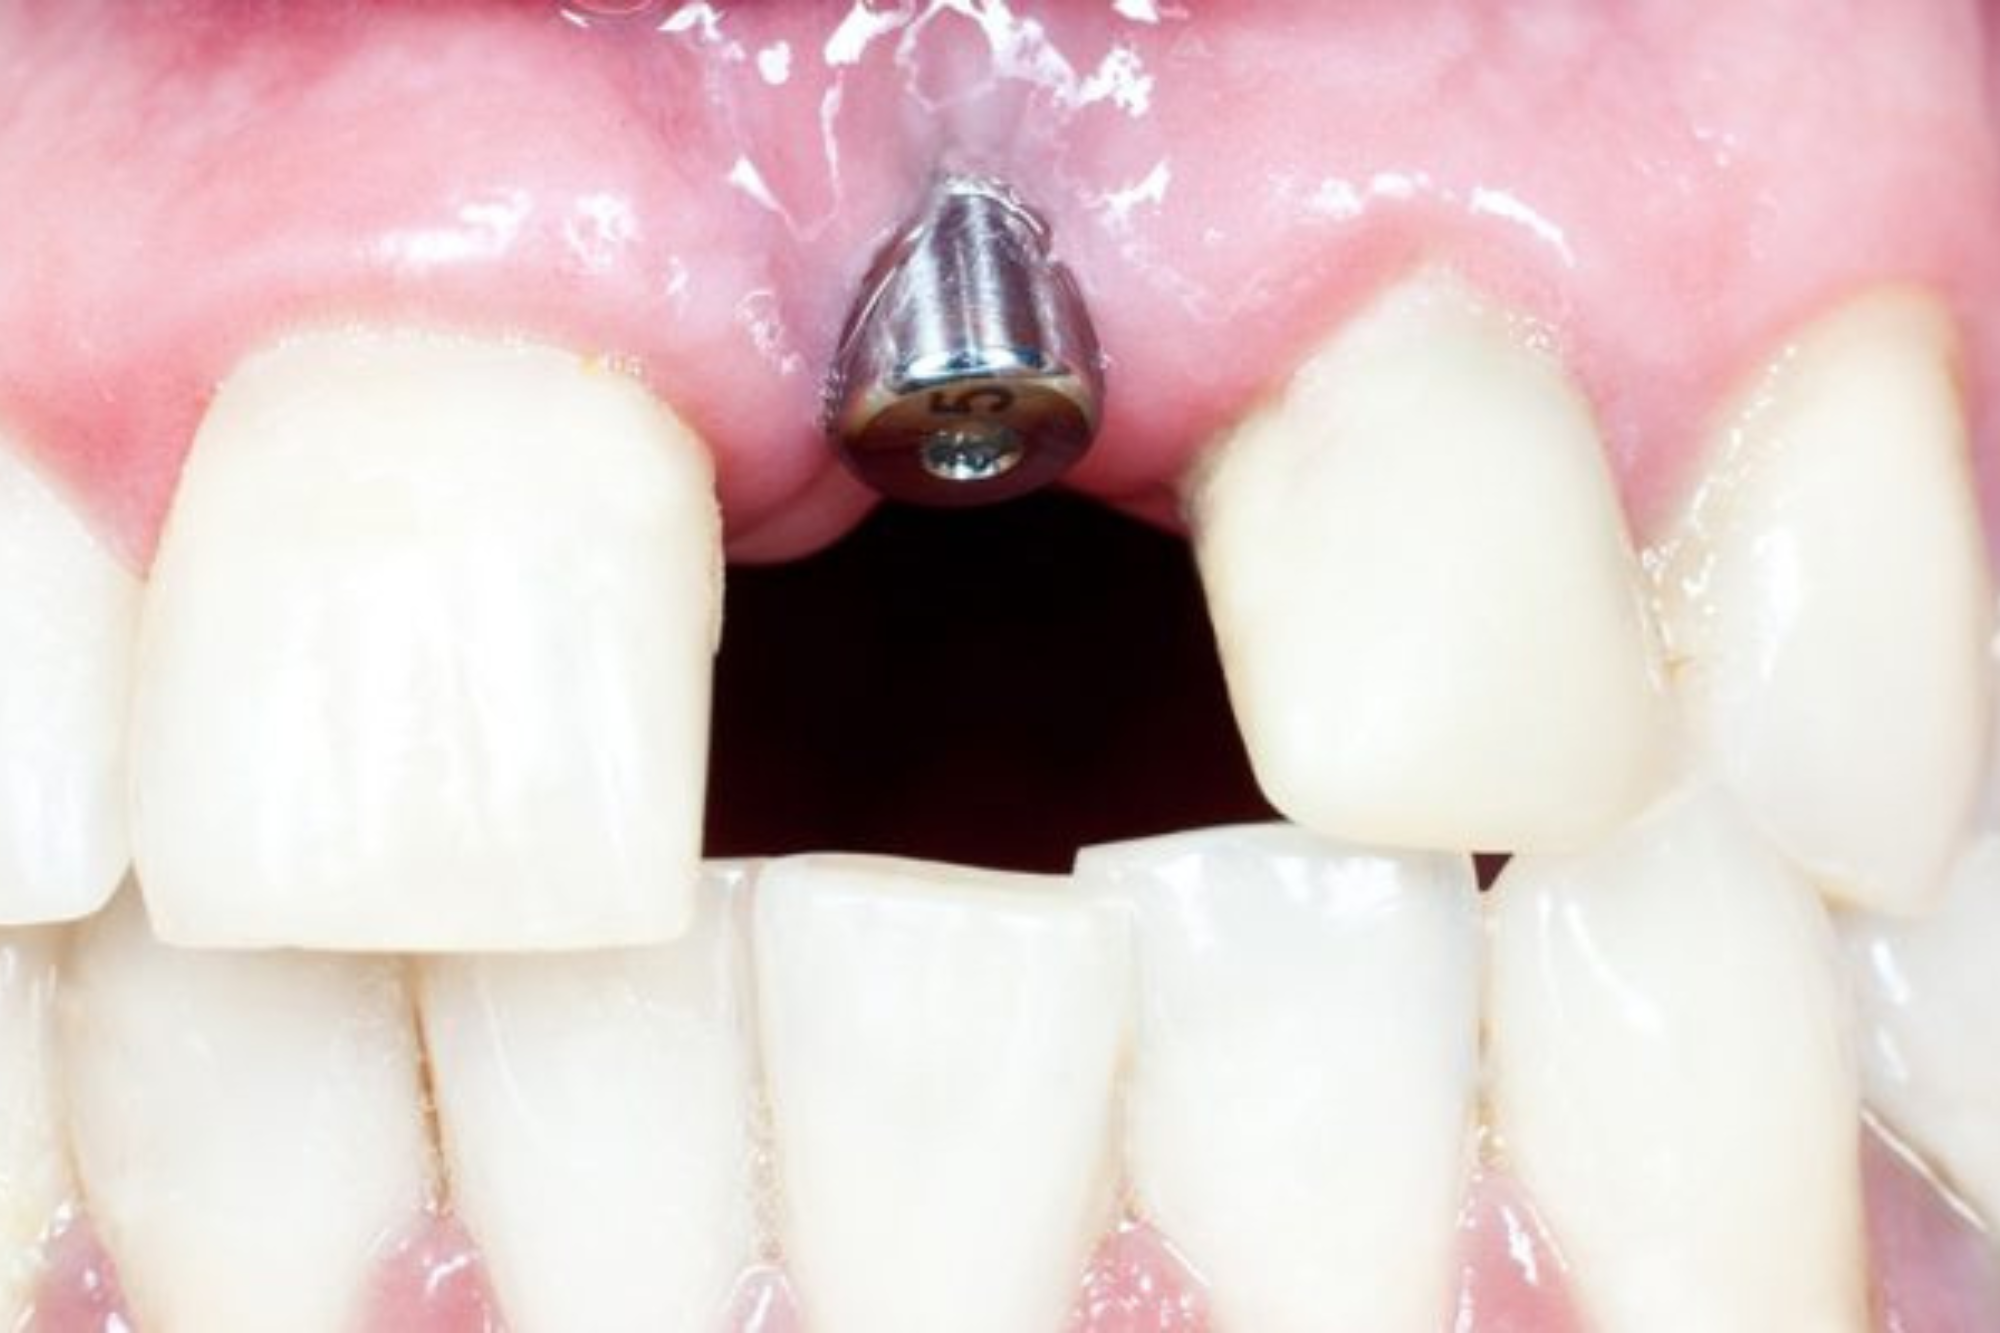 Immediate Dental Implant